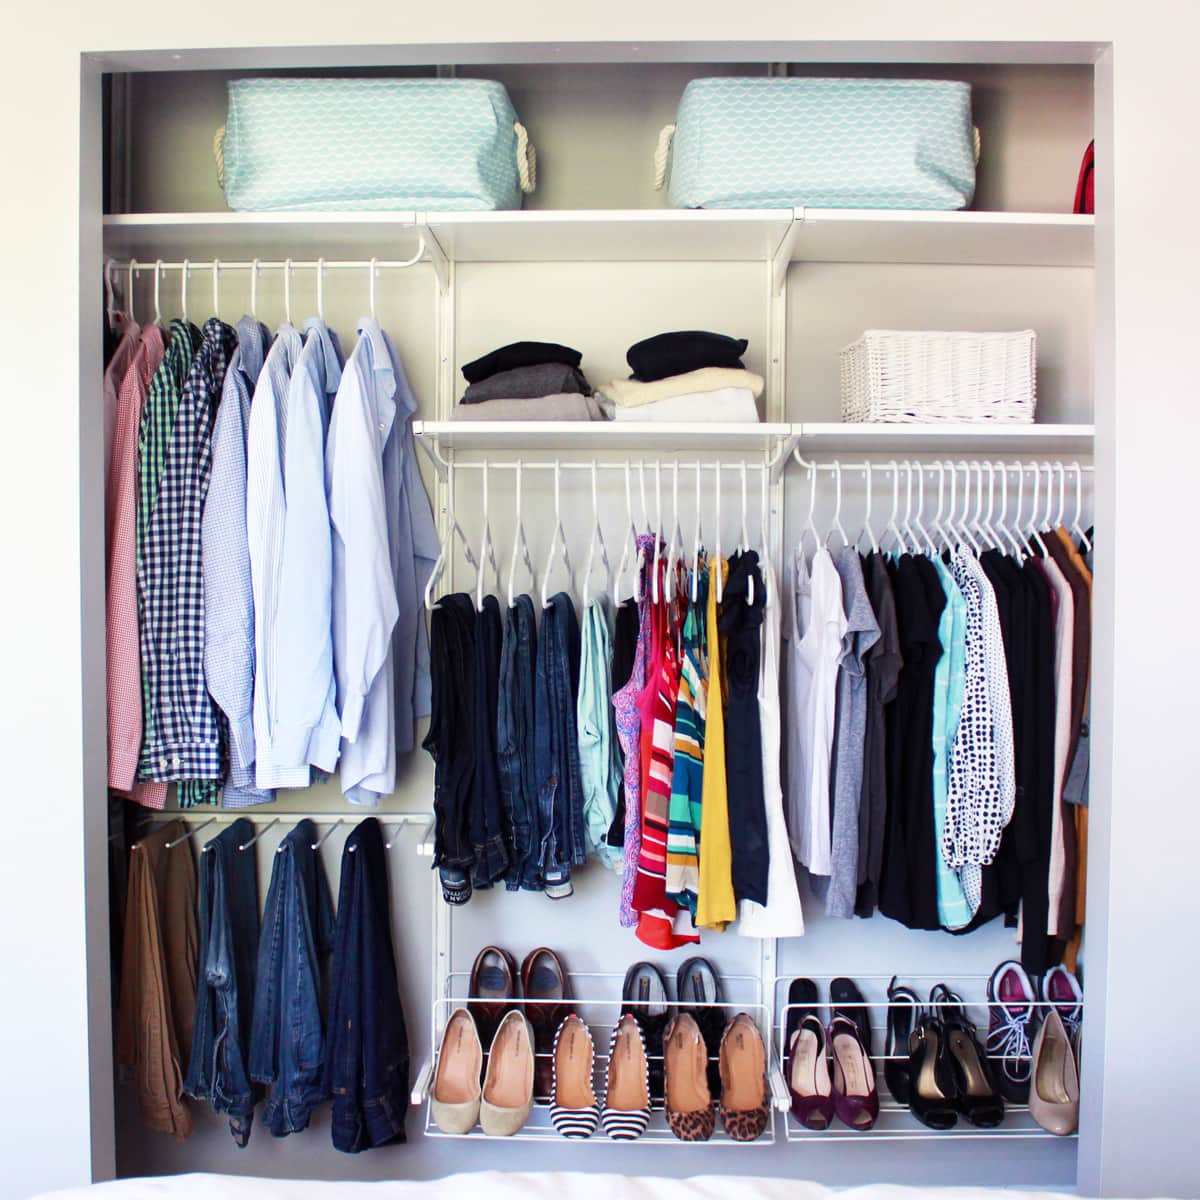 guarda-roupa pequeno organizado